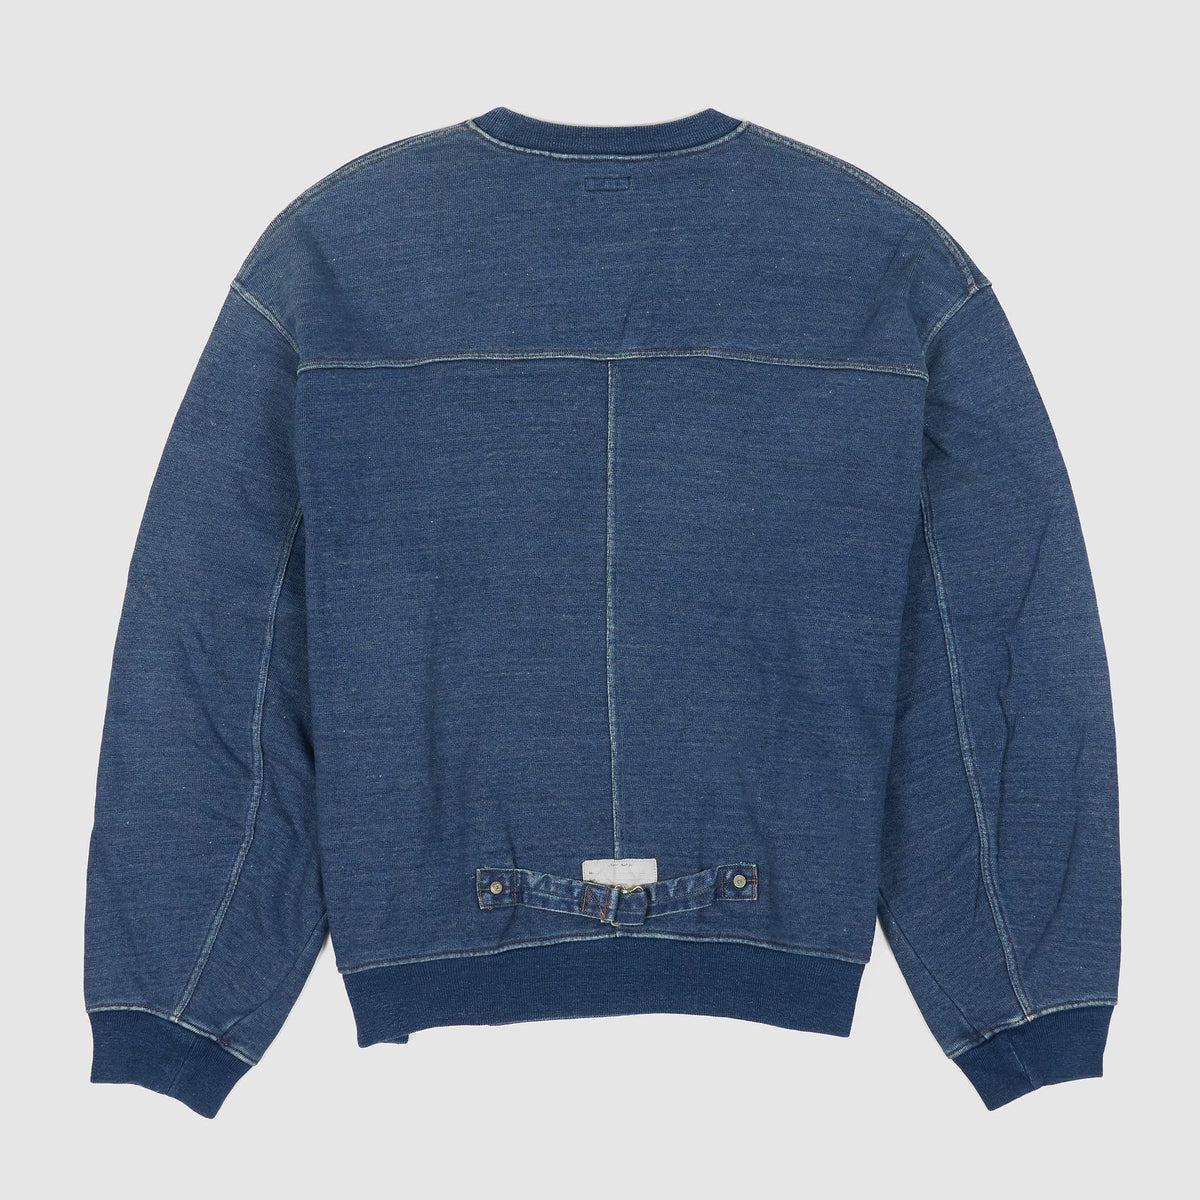 Vintage Denim Hoodie Inspired by Kapital Pullover Sweater -  Hong Kong